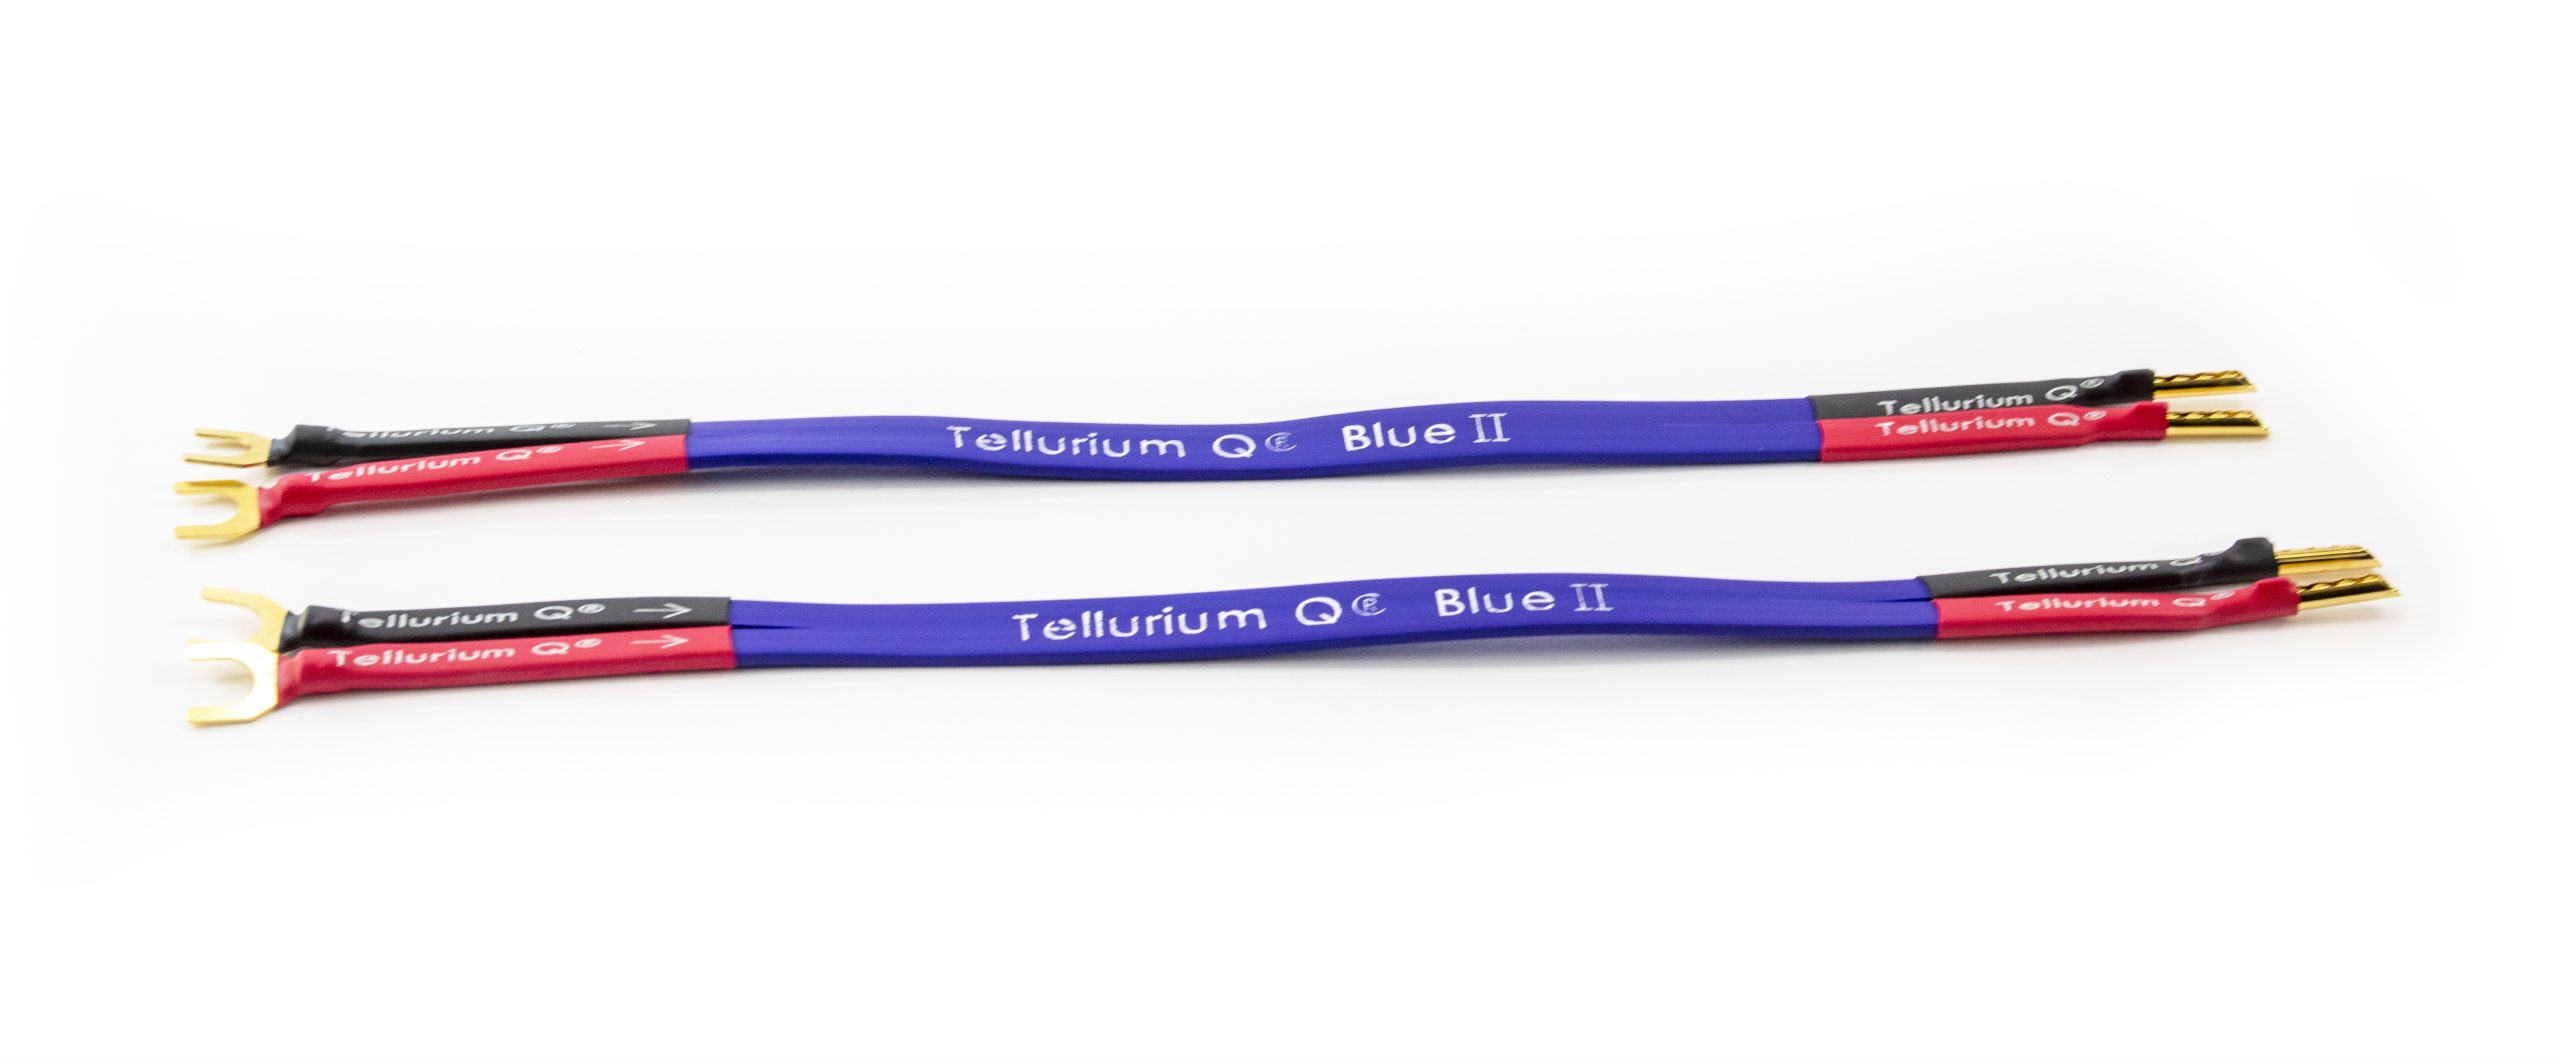 Tellurium Q | Blue II | Jumper